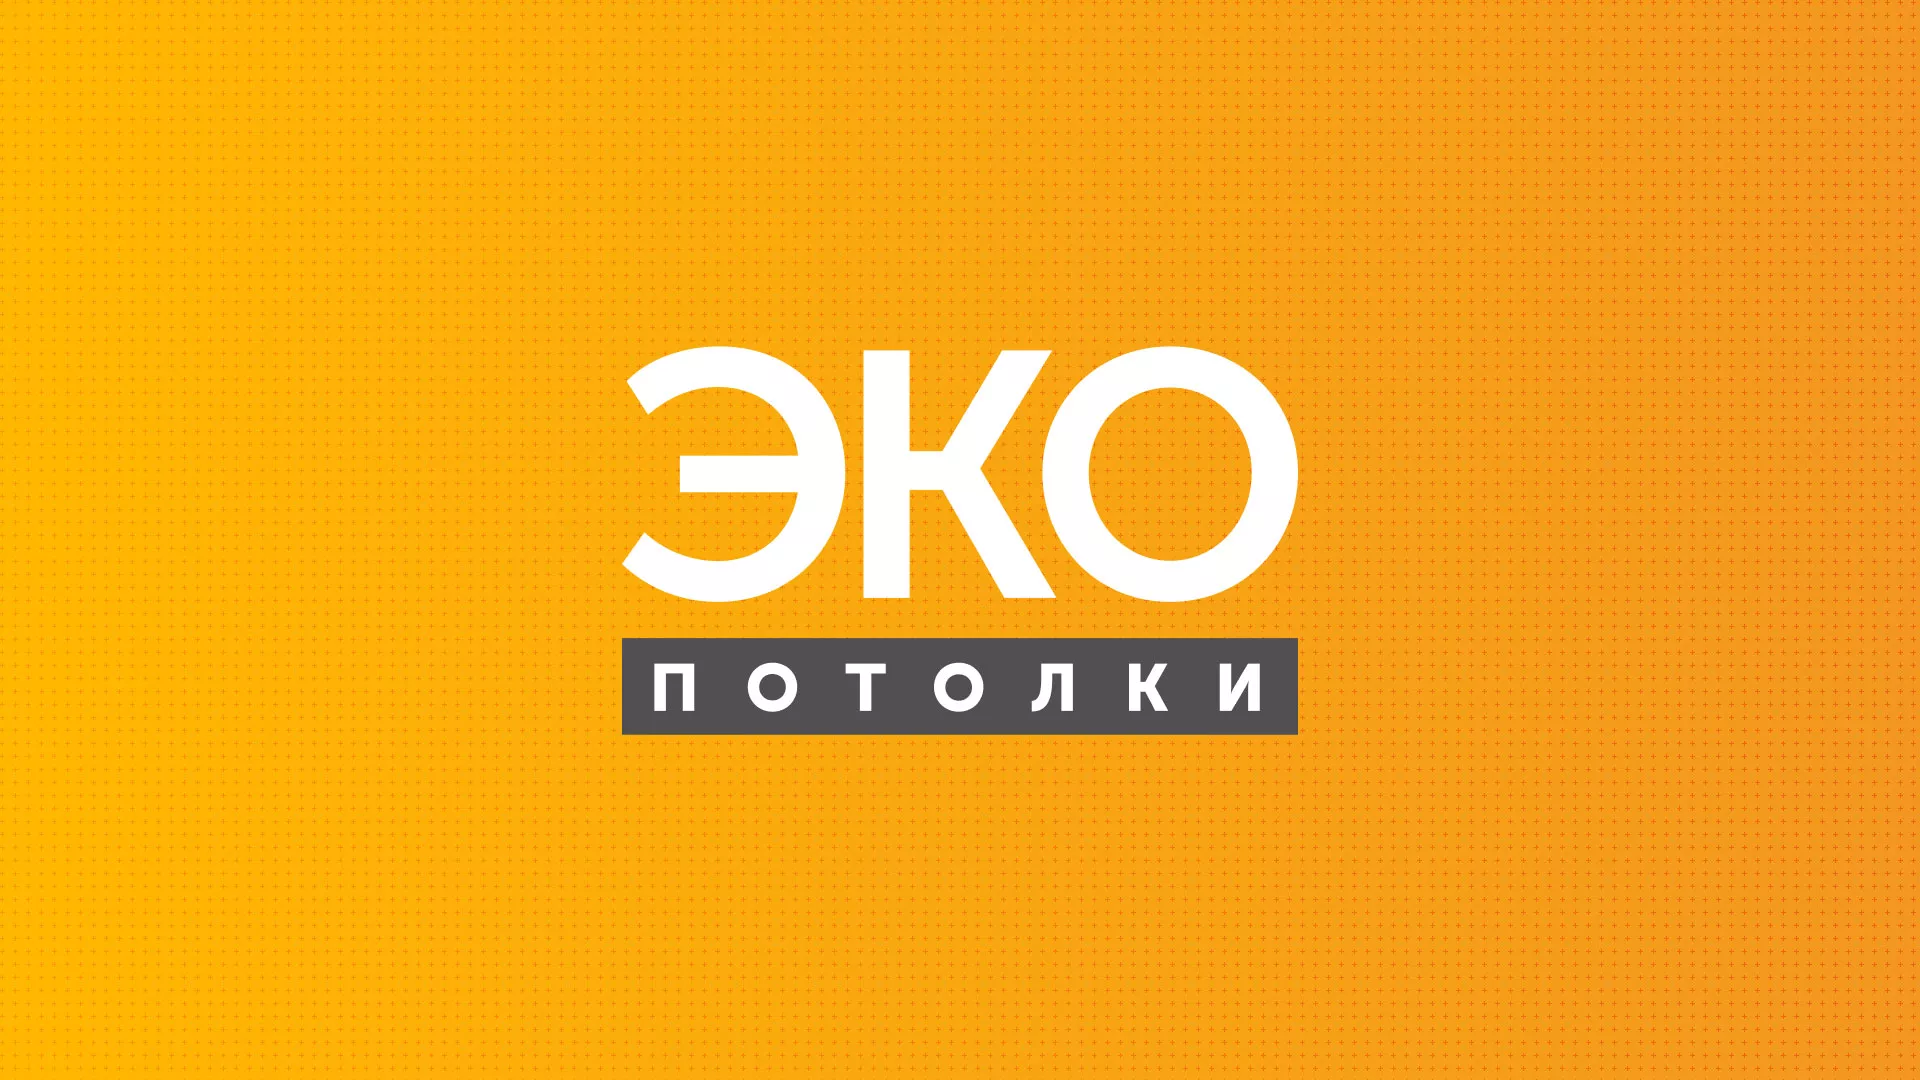 Разработка сайта по натяжным потолкам «Эко Потолки» в Красновишерске